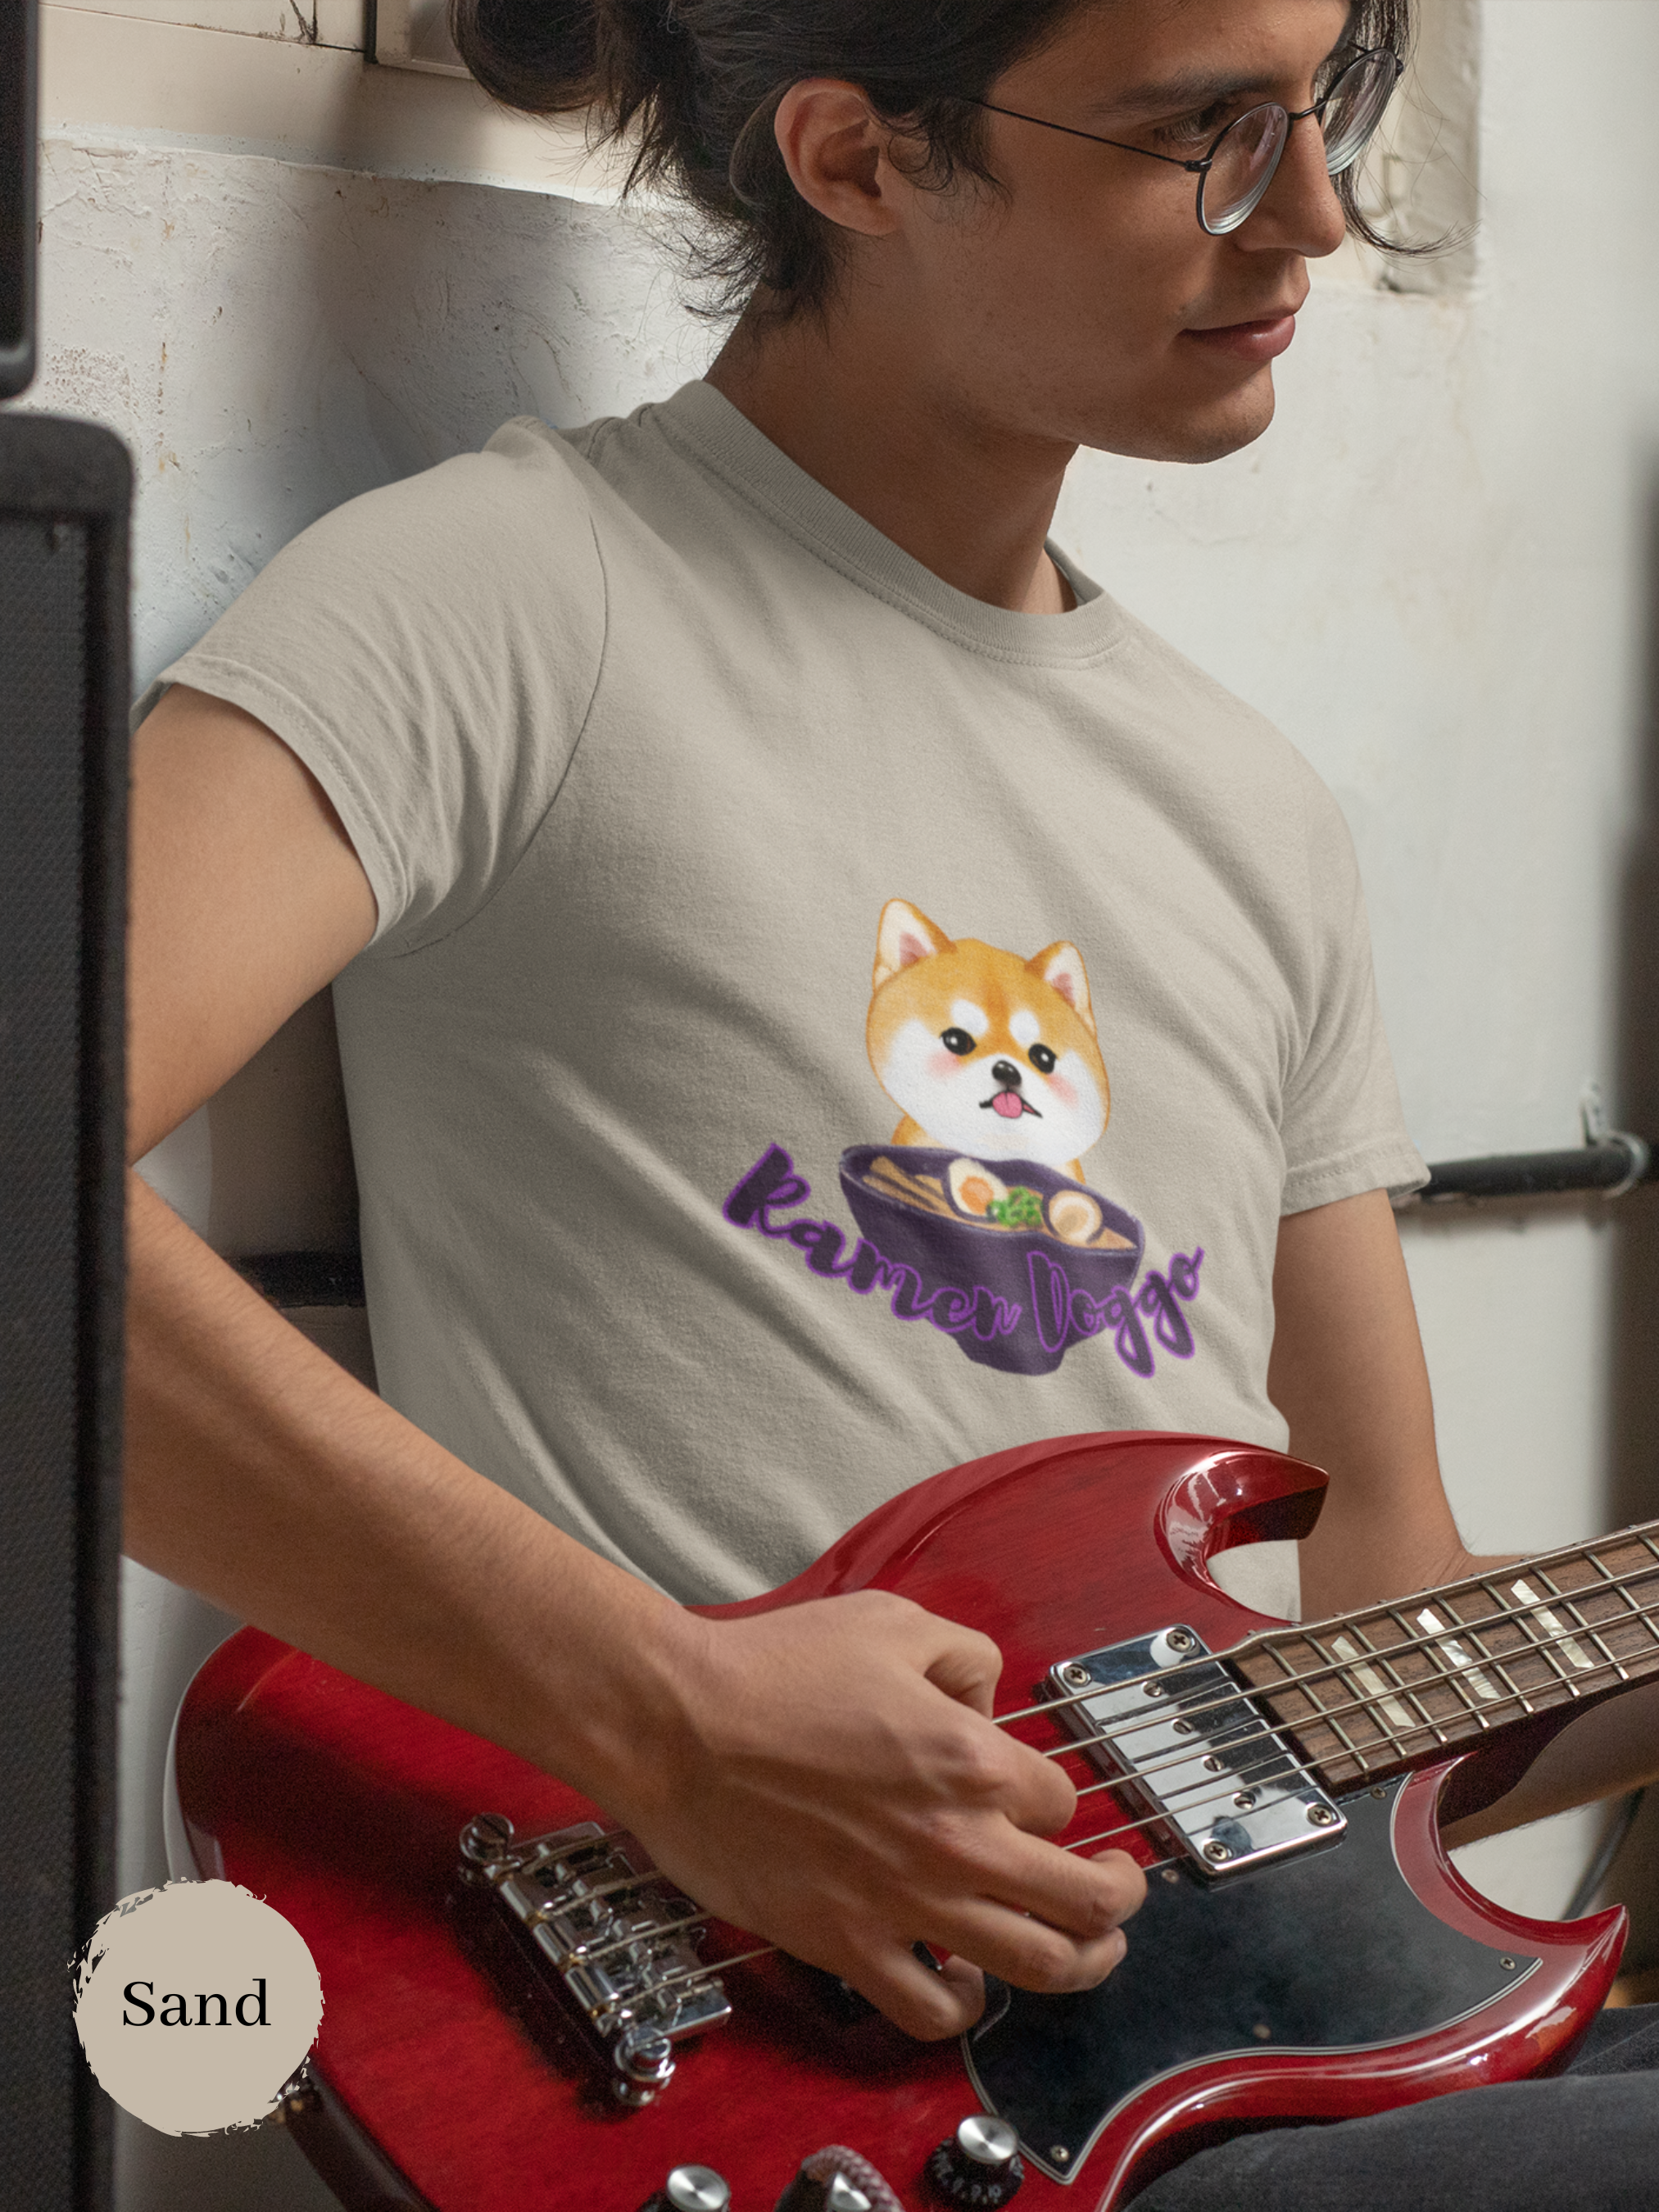 Ramen T-shirt: Shiba Inu Ramen Art for Foodie and Japanese Shirt Fans